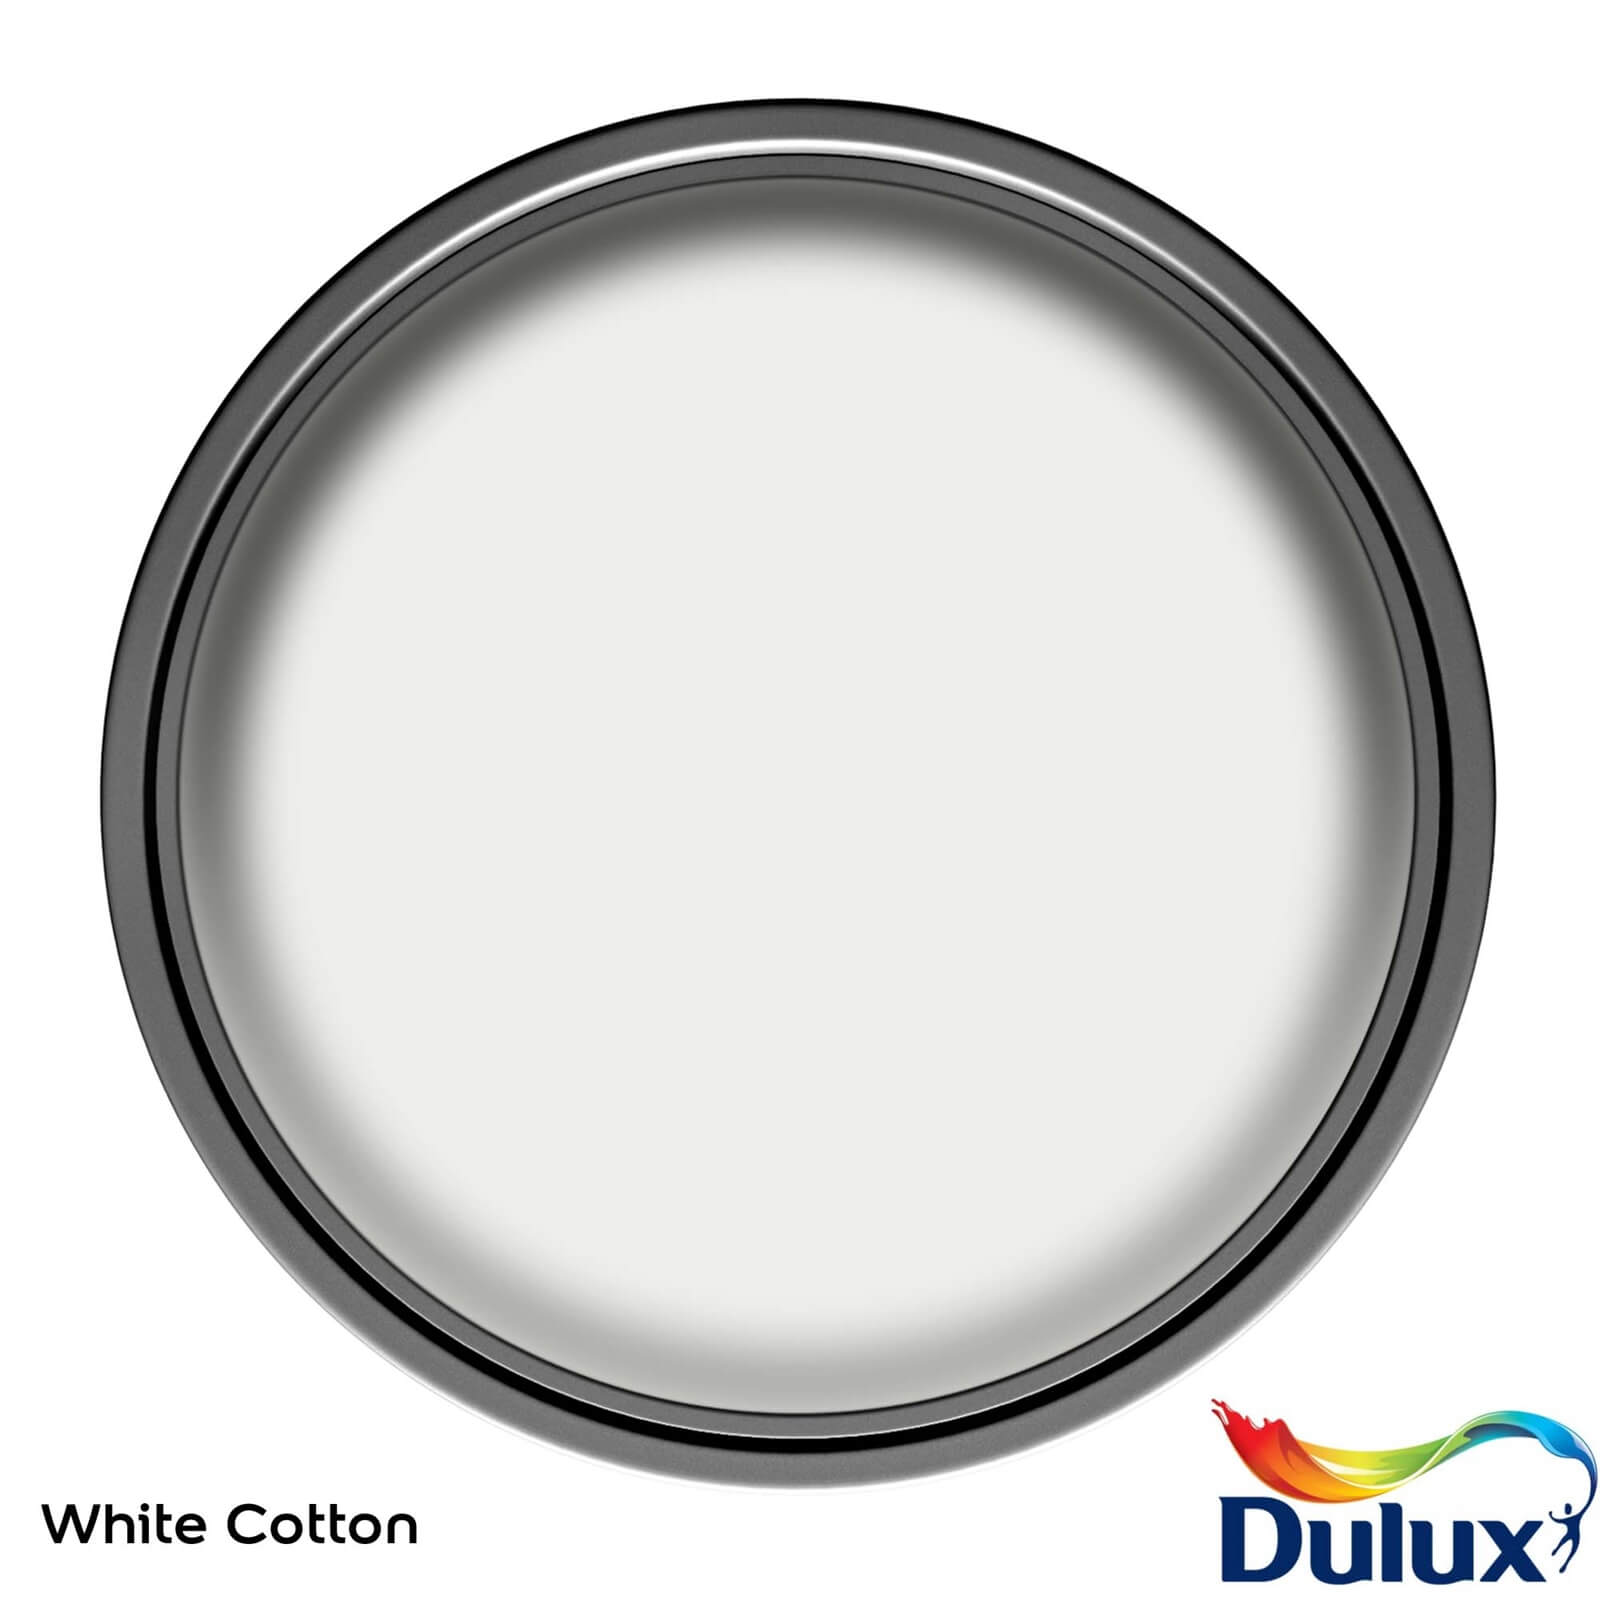 Dulux Easycare Kitchen White Cotton Matt Paint - 2.5L